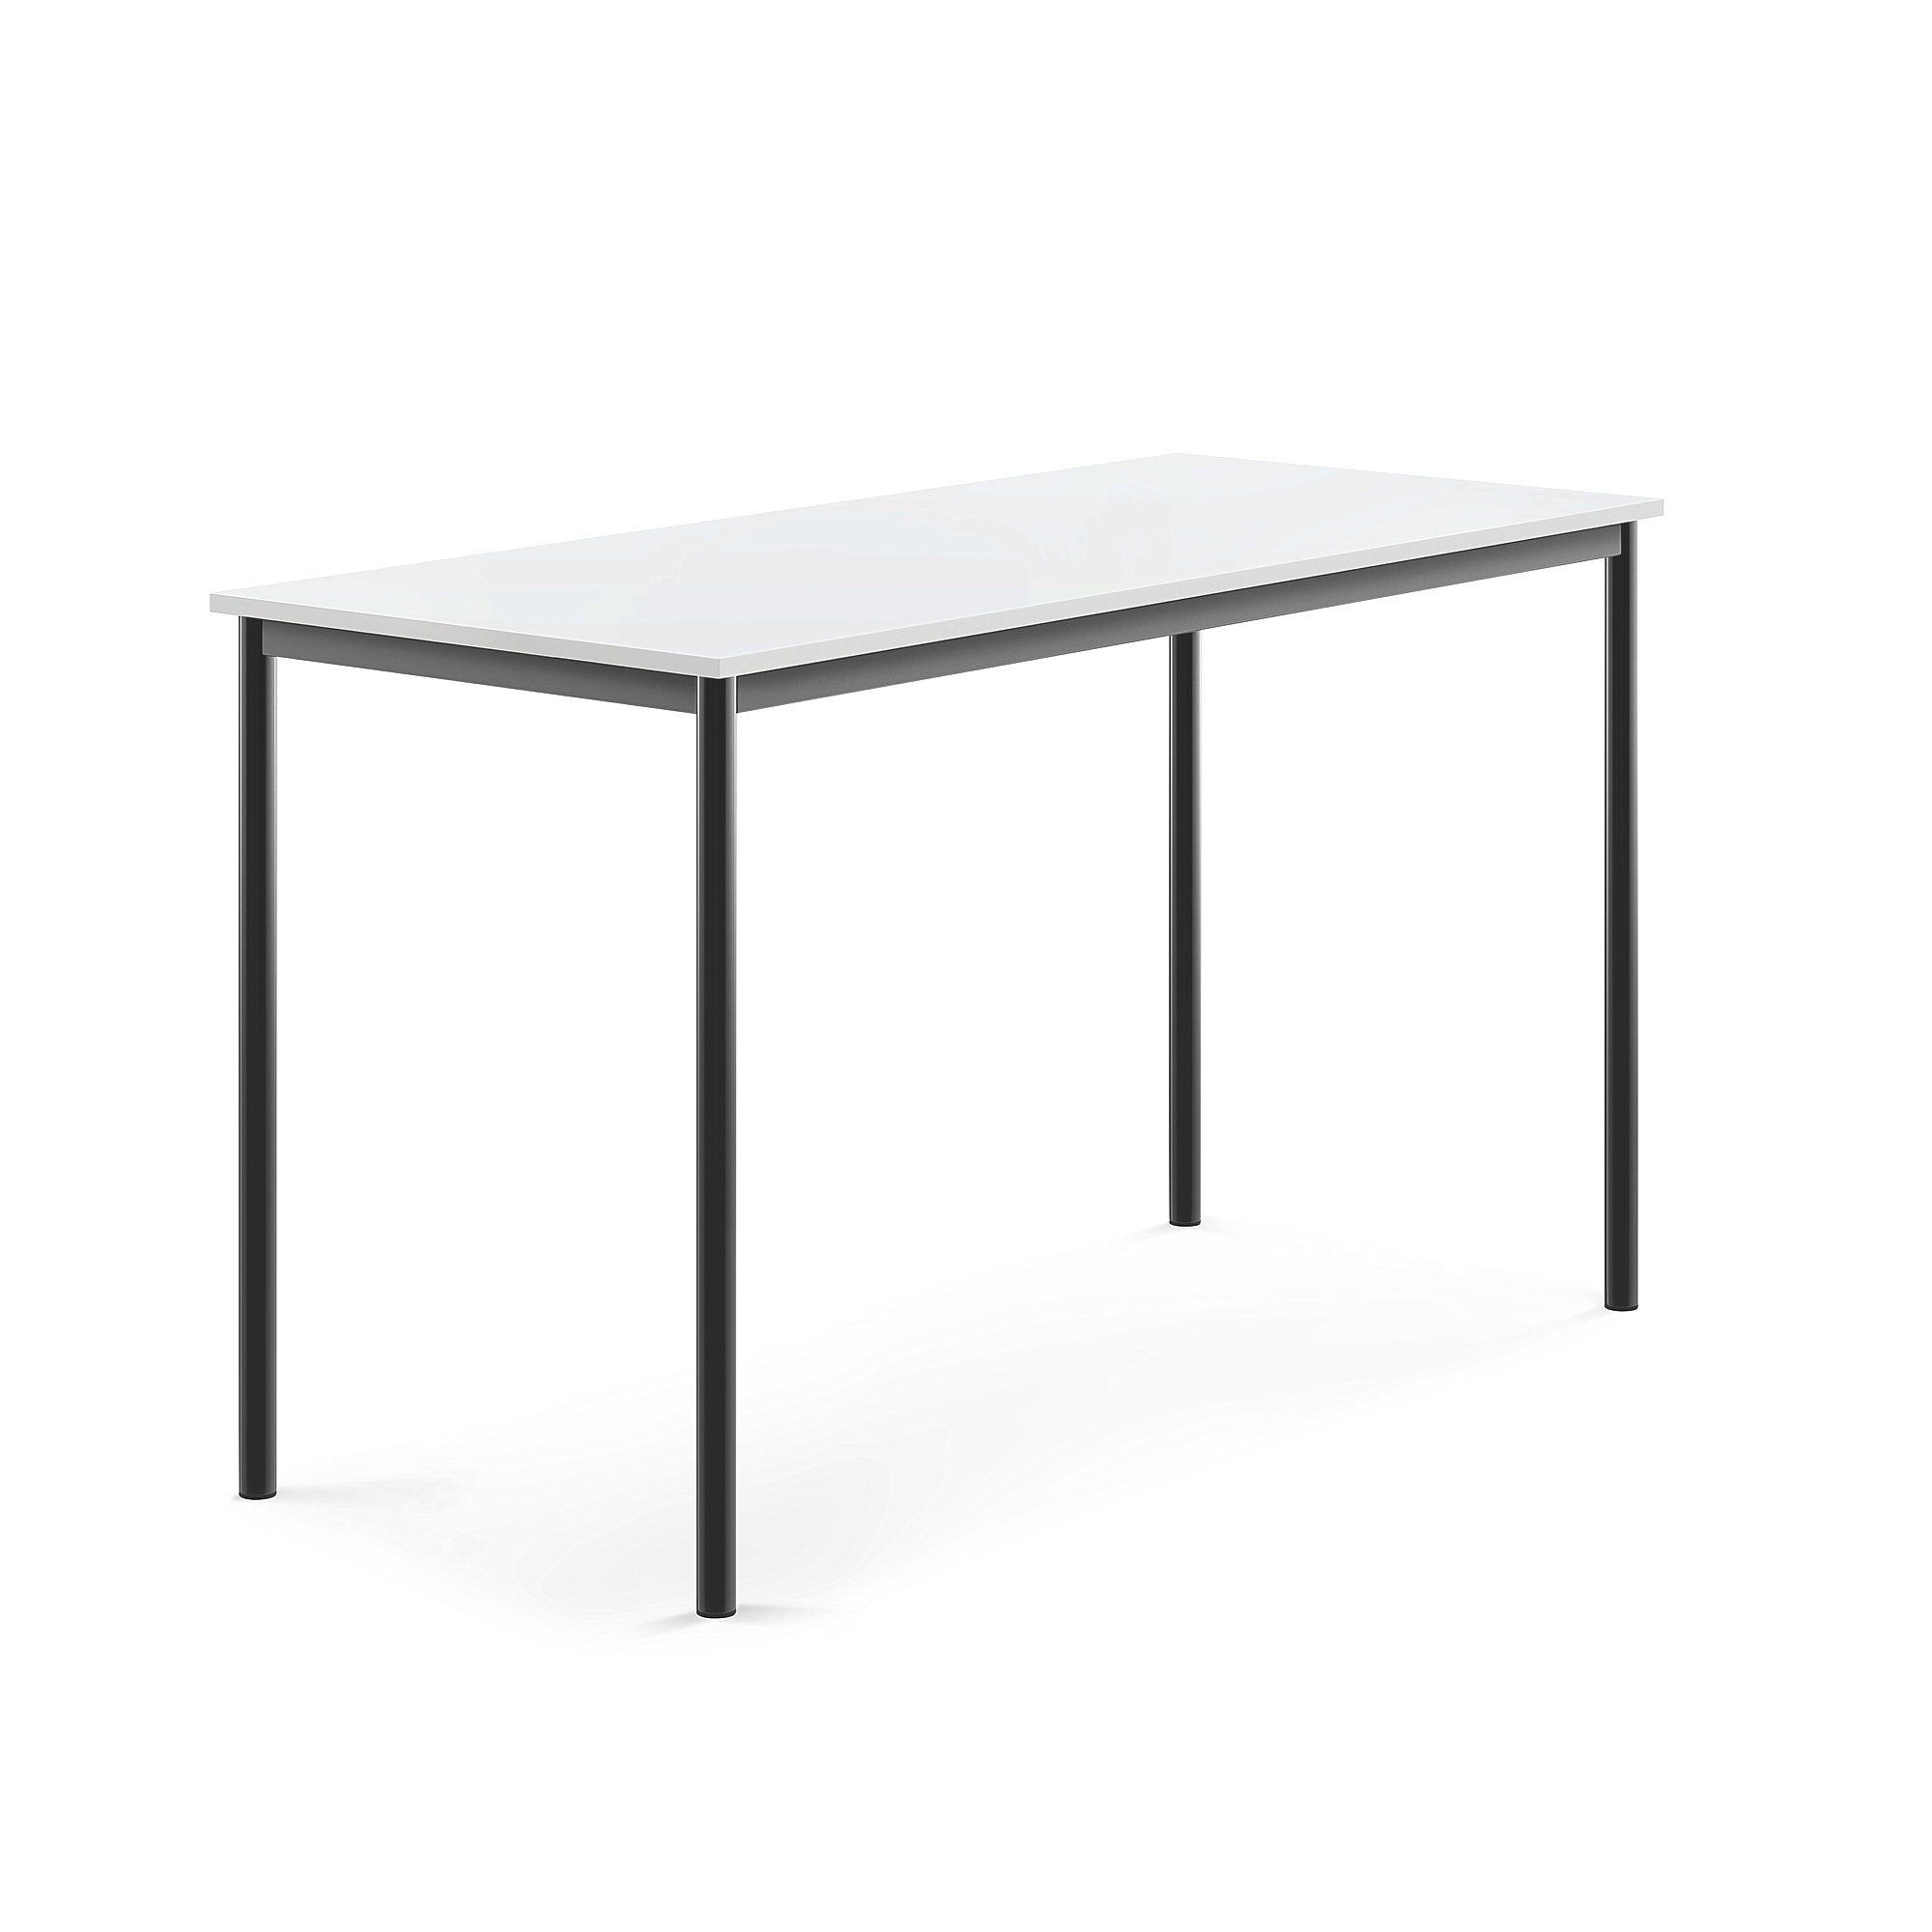 Stůl SONITUS, 1600x700x900 mm, antracitově šedé nohy, HPL deska tlumící hluk, bílá